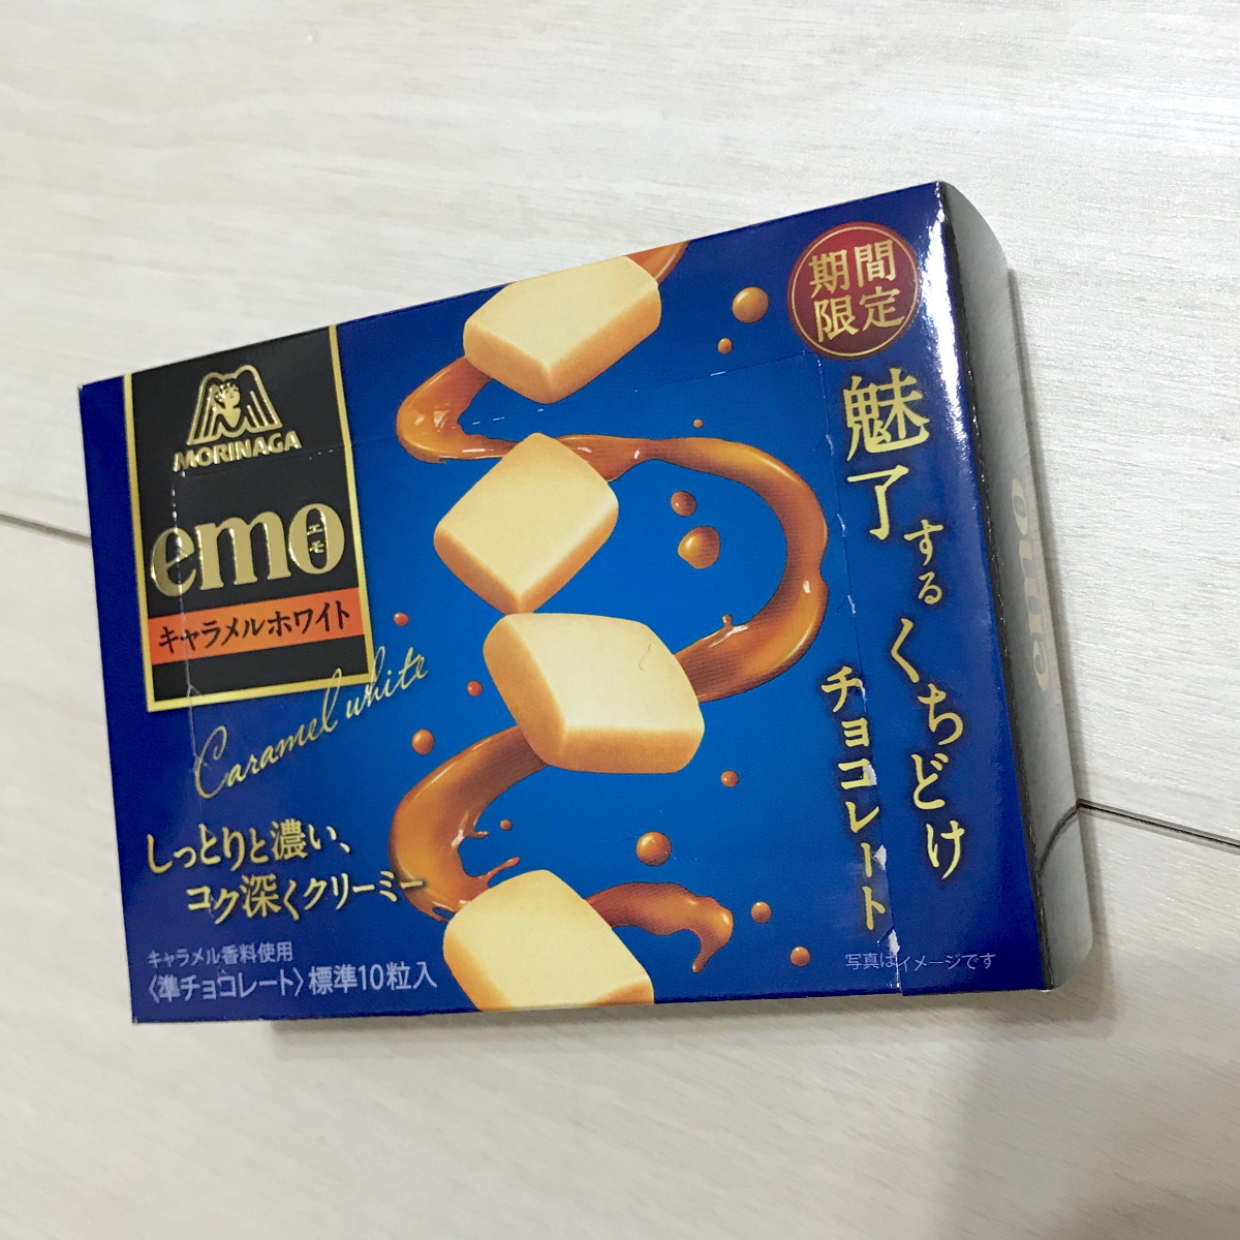  森永の新感覚チョコ【emo】がとろける甘さで超絶おいしいとSNSで話題！ 